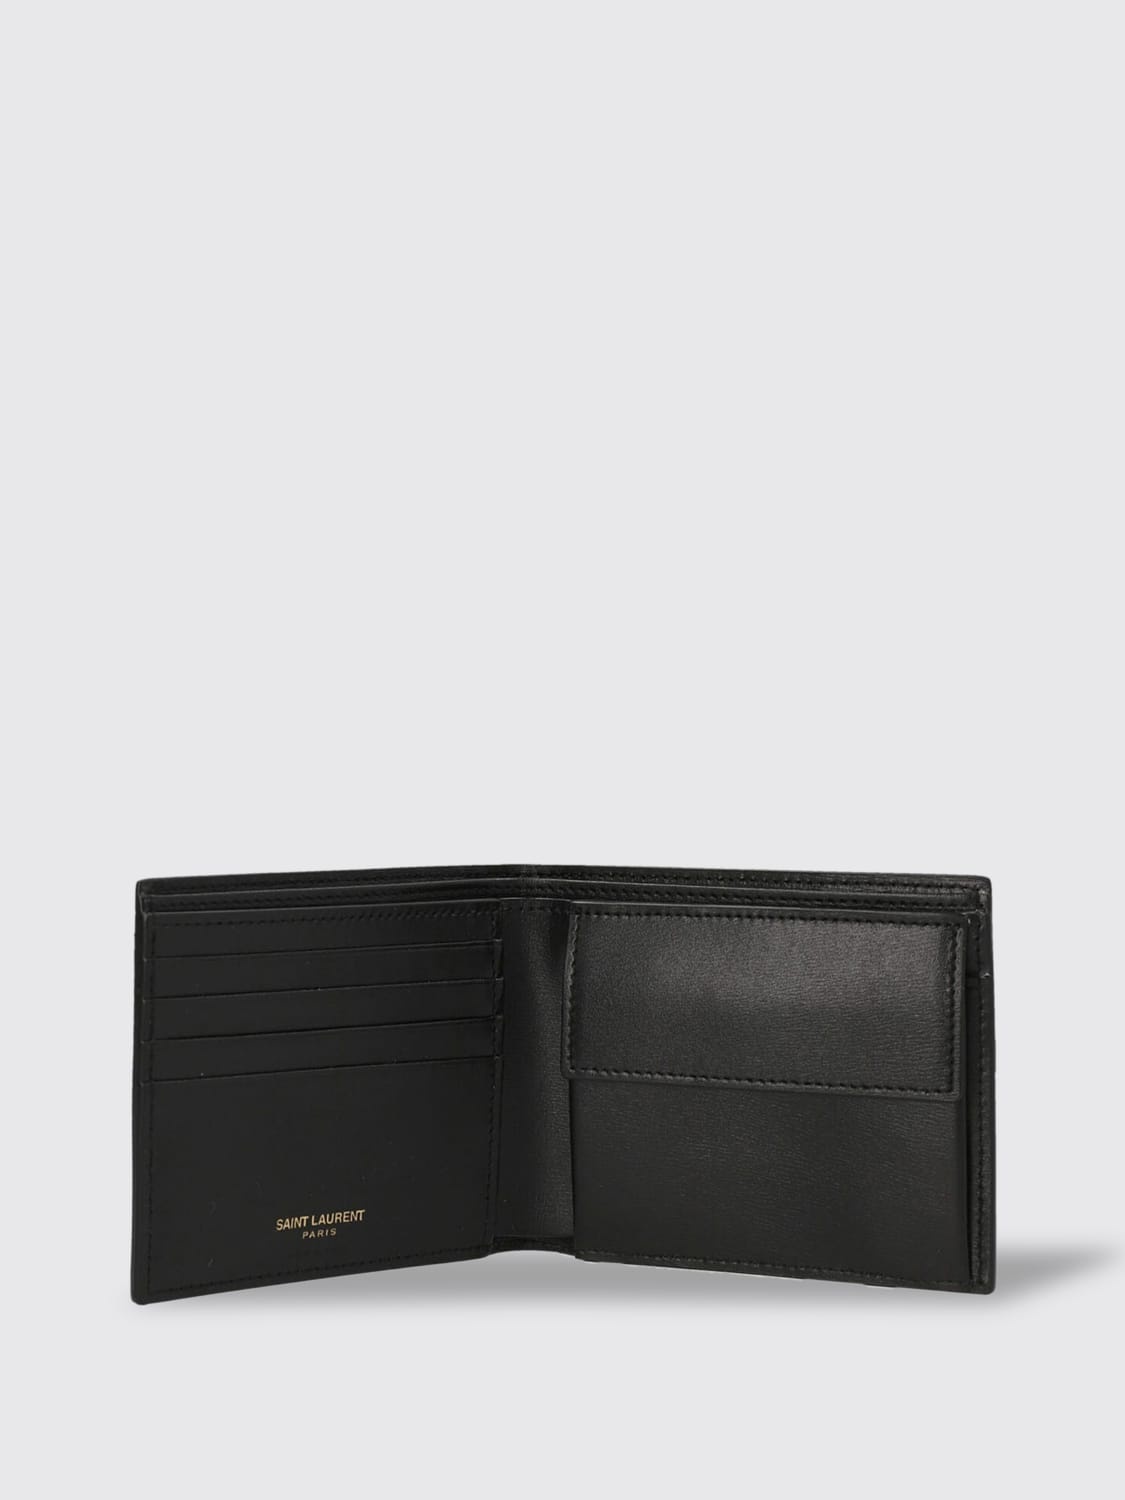 Saint Laurent leather wallet - 2